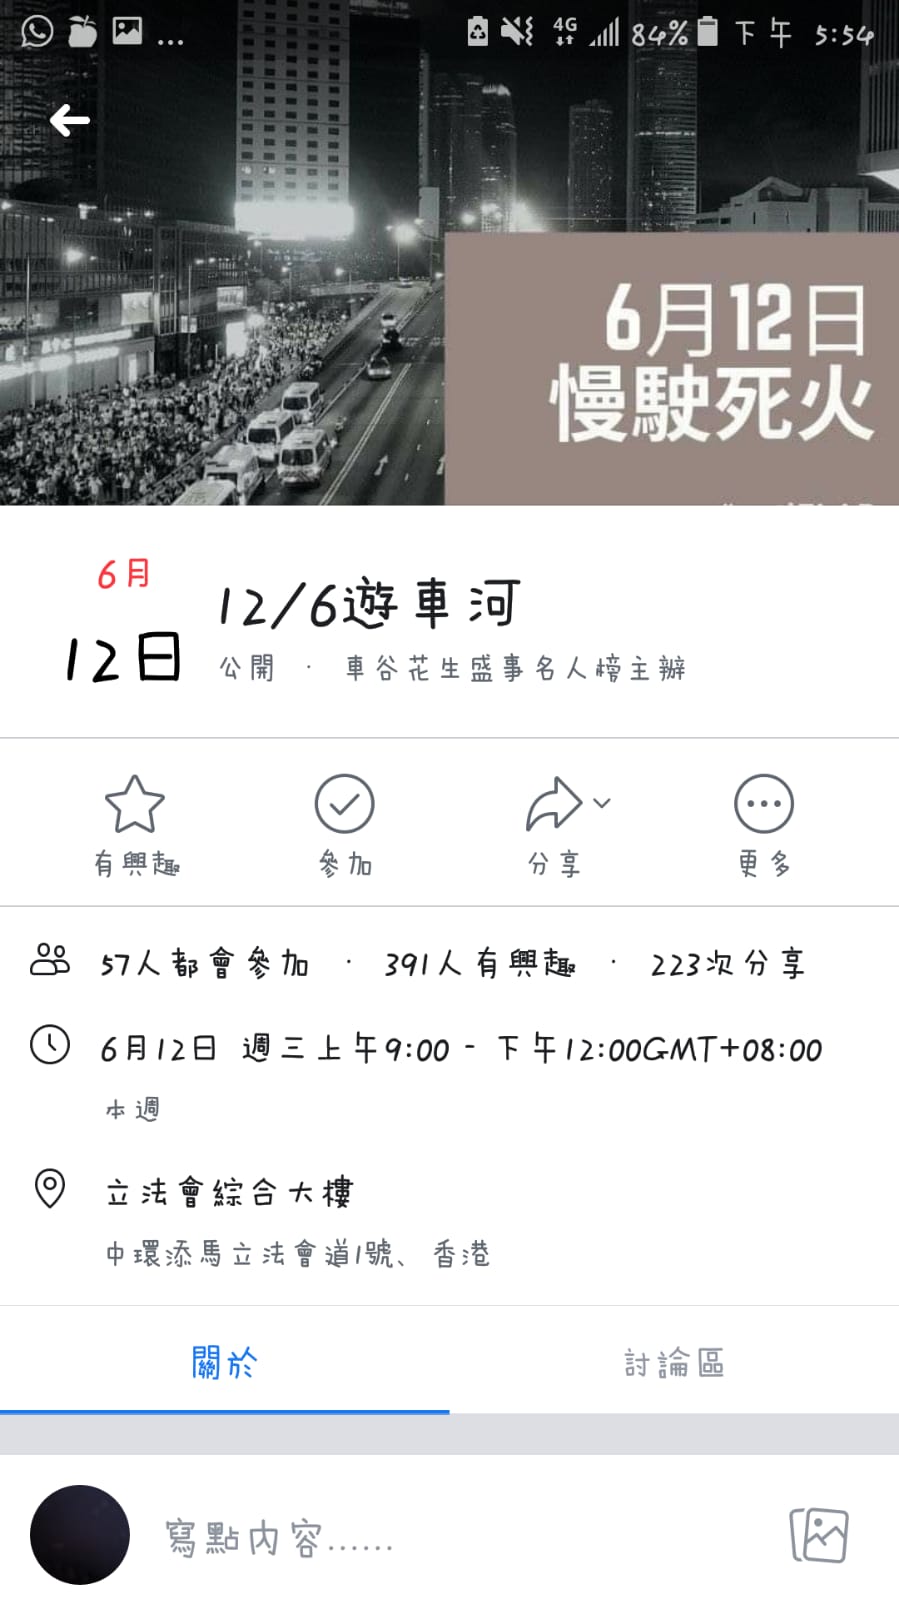 2019年6月12日 反送中罷工罷課 (4).jpg